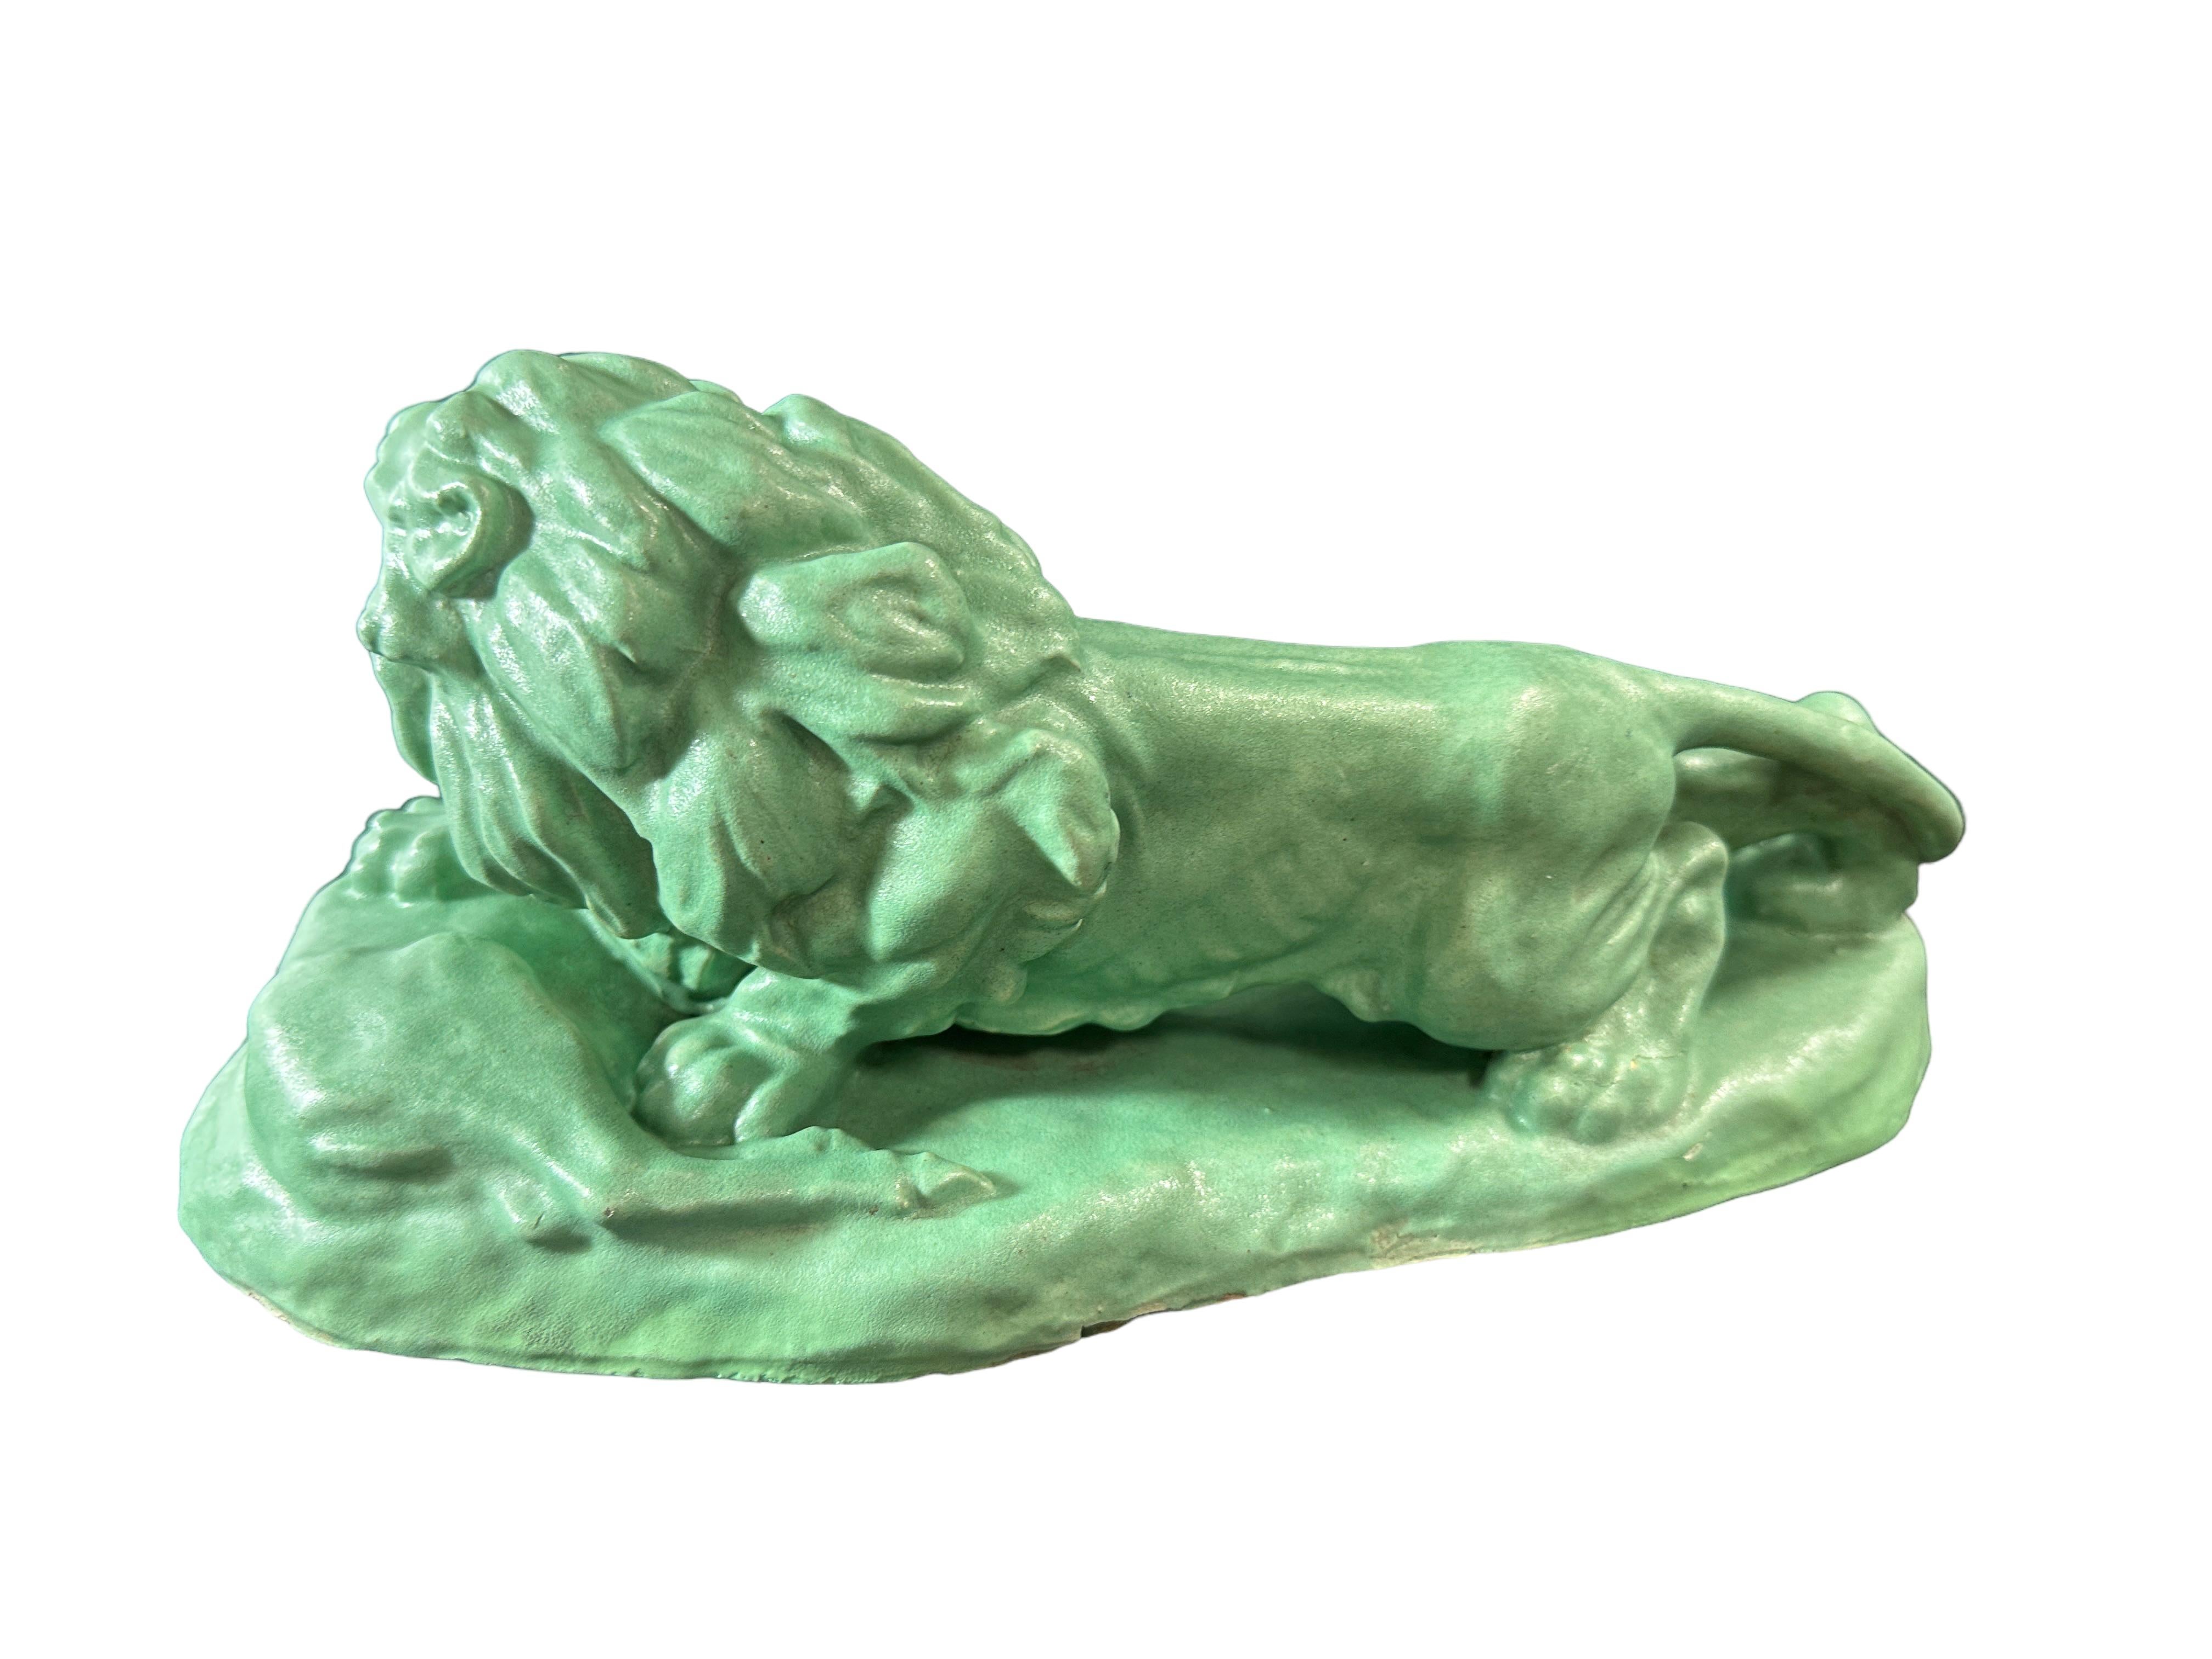 Vernissé Sculpture de lion en céramique terre cuite Jul. Singer, 1937, Vienne, Autriche en vente